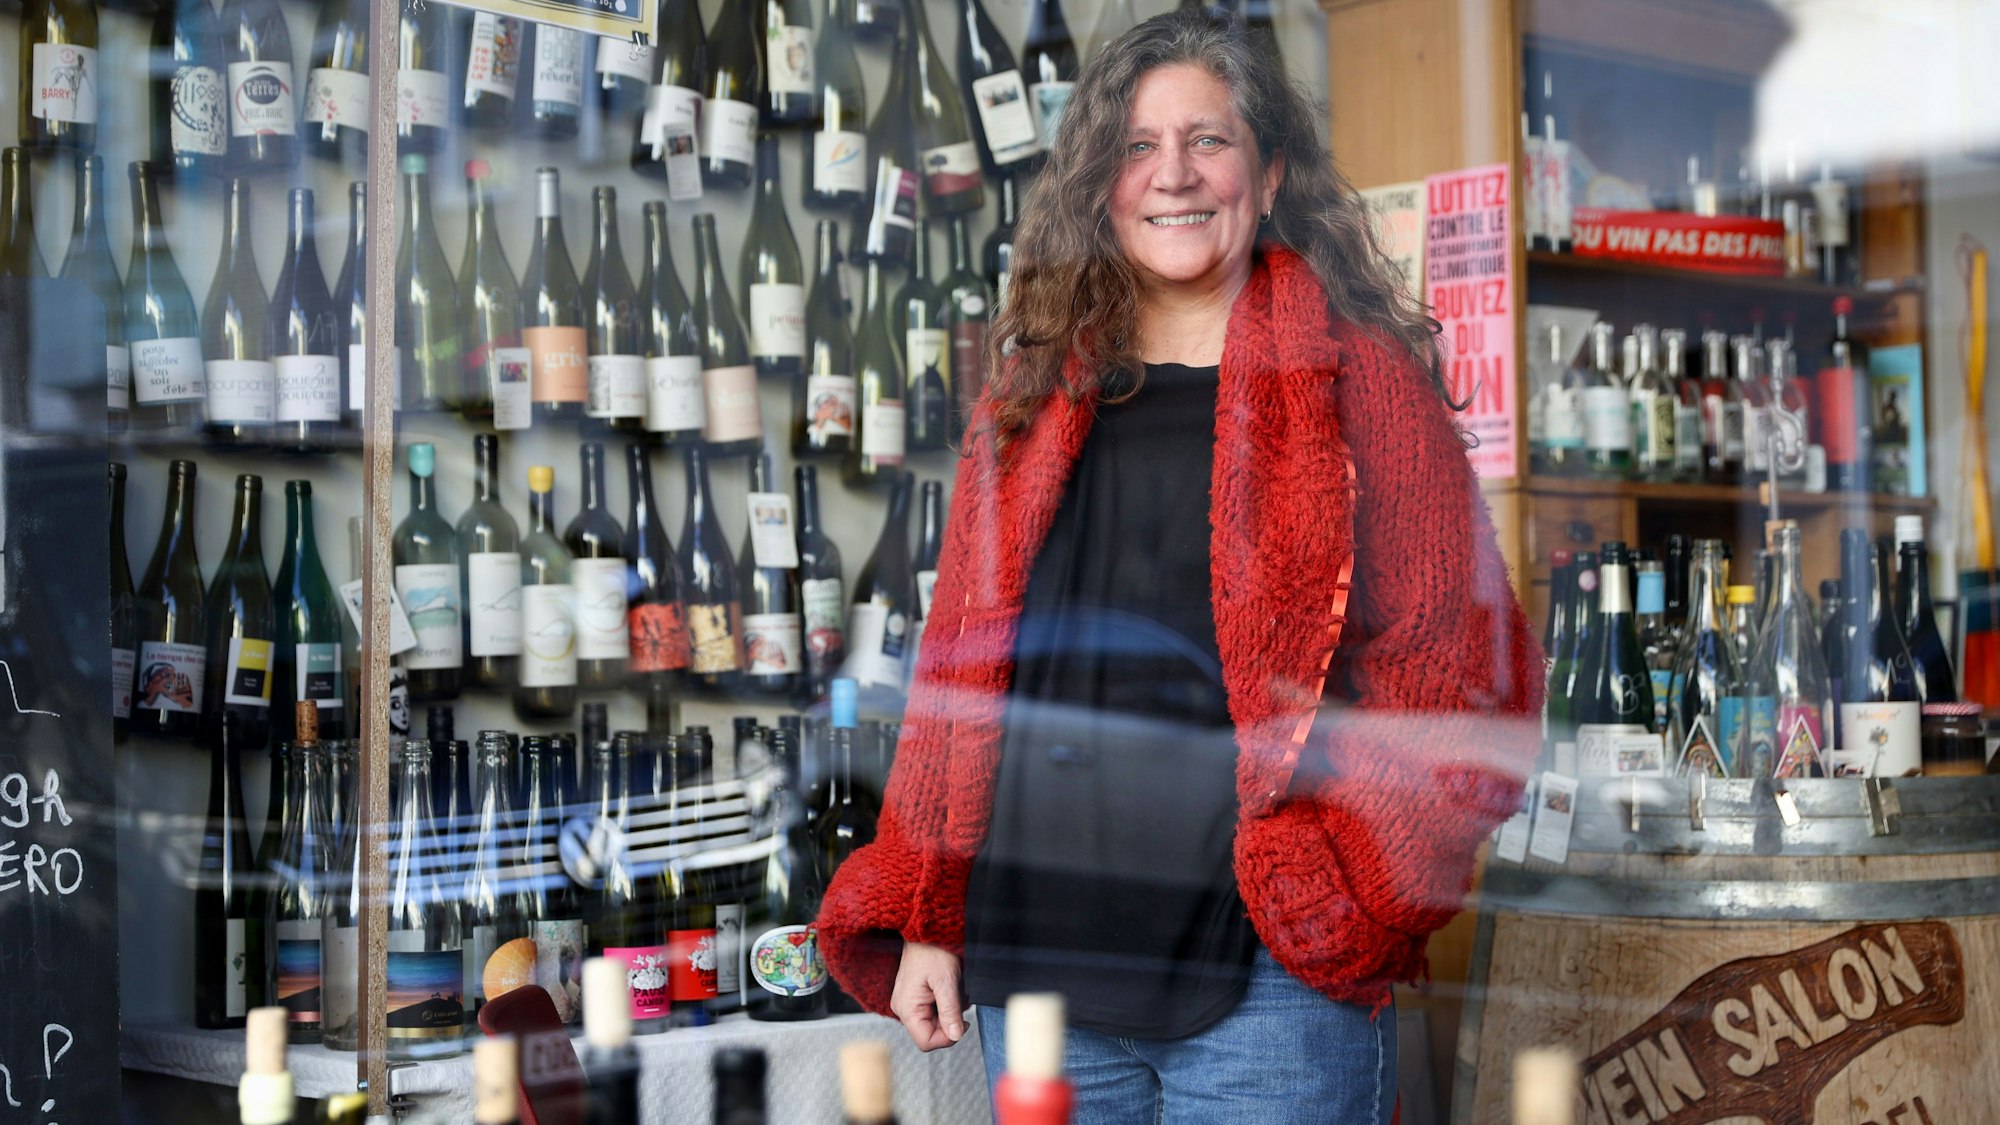 Naturwein-Pionierin Surk-ki Schrade in ihrem Weinladen „La Vincaillairie“ in der Leostraße in Ehrenfeld